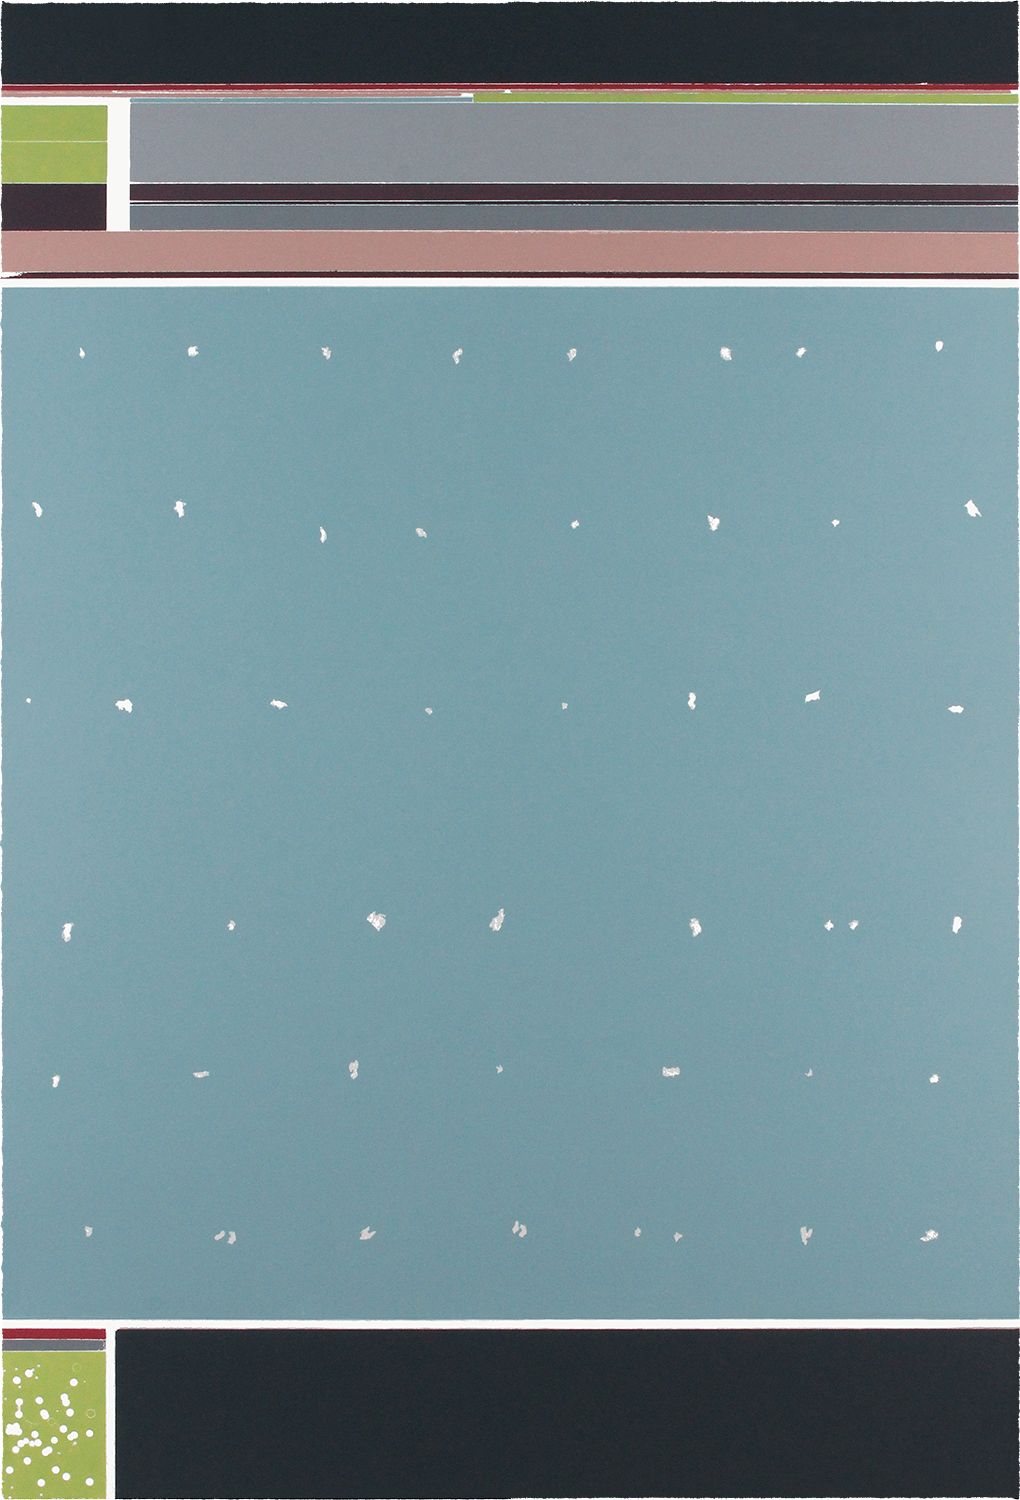 2/2 OHNE TITEL | Monotypie / Farbholzschnitt | 93 x 63 cm | 2020